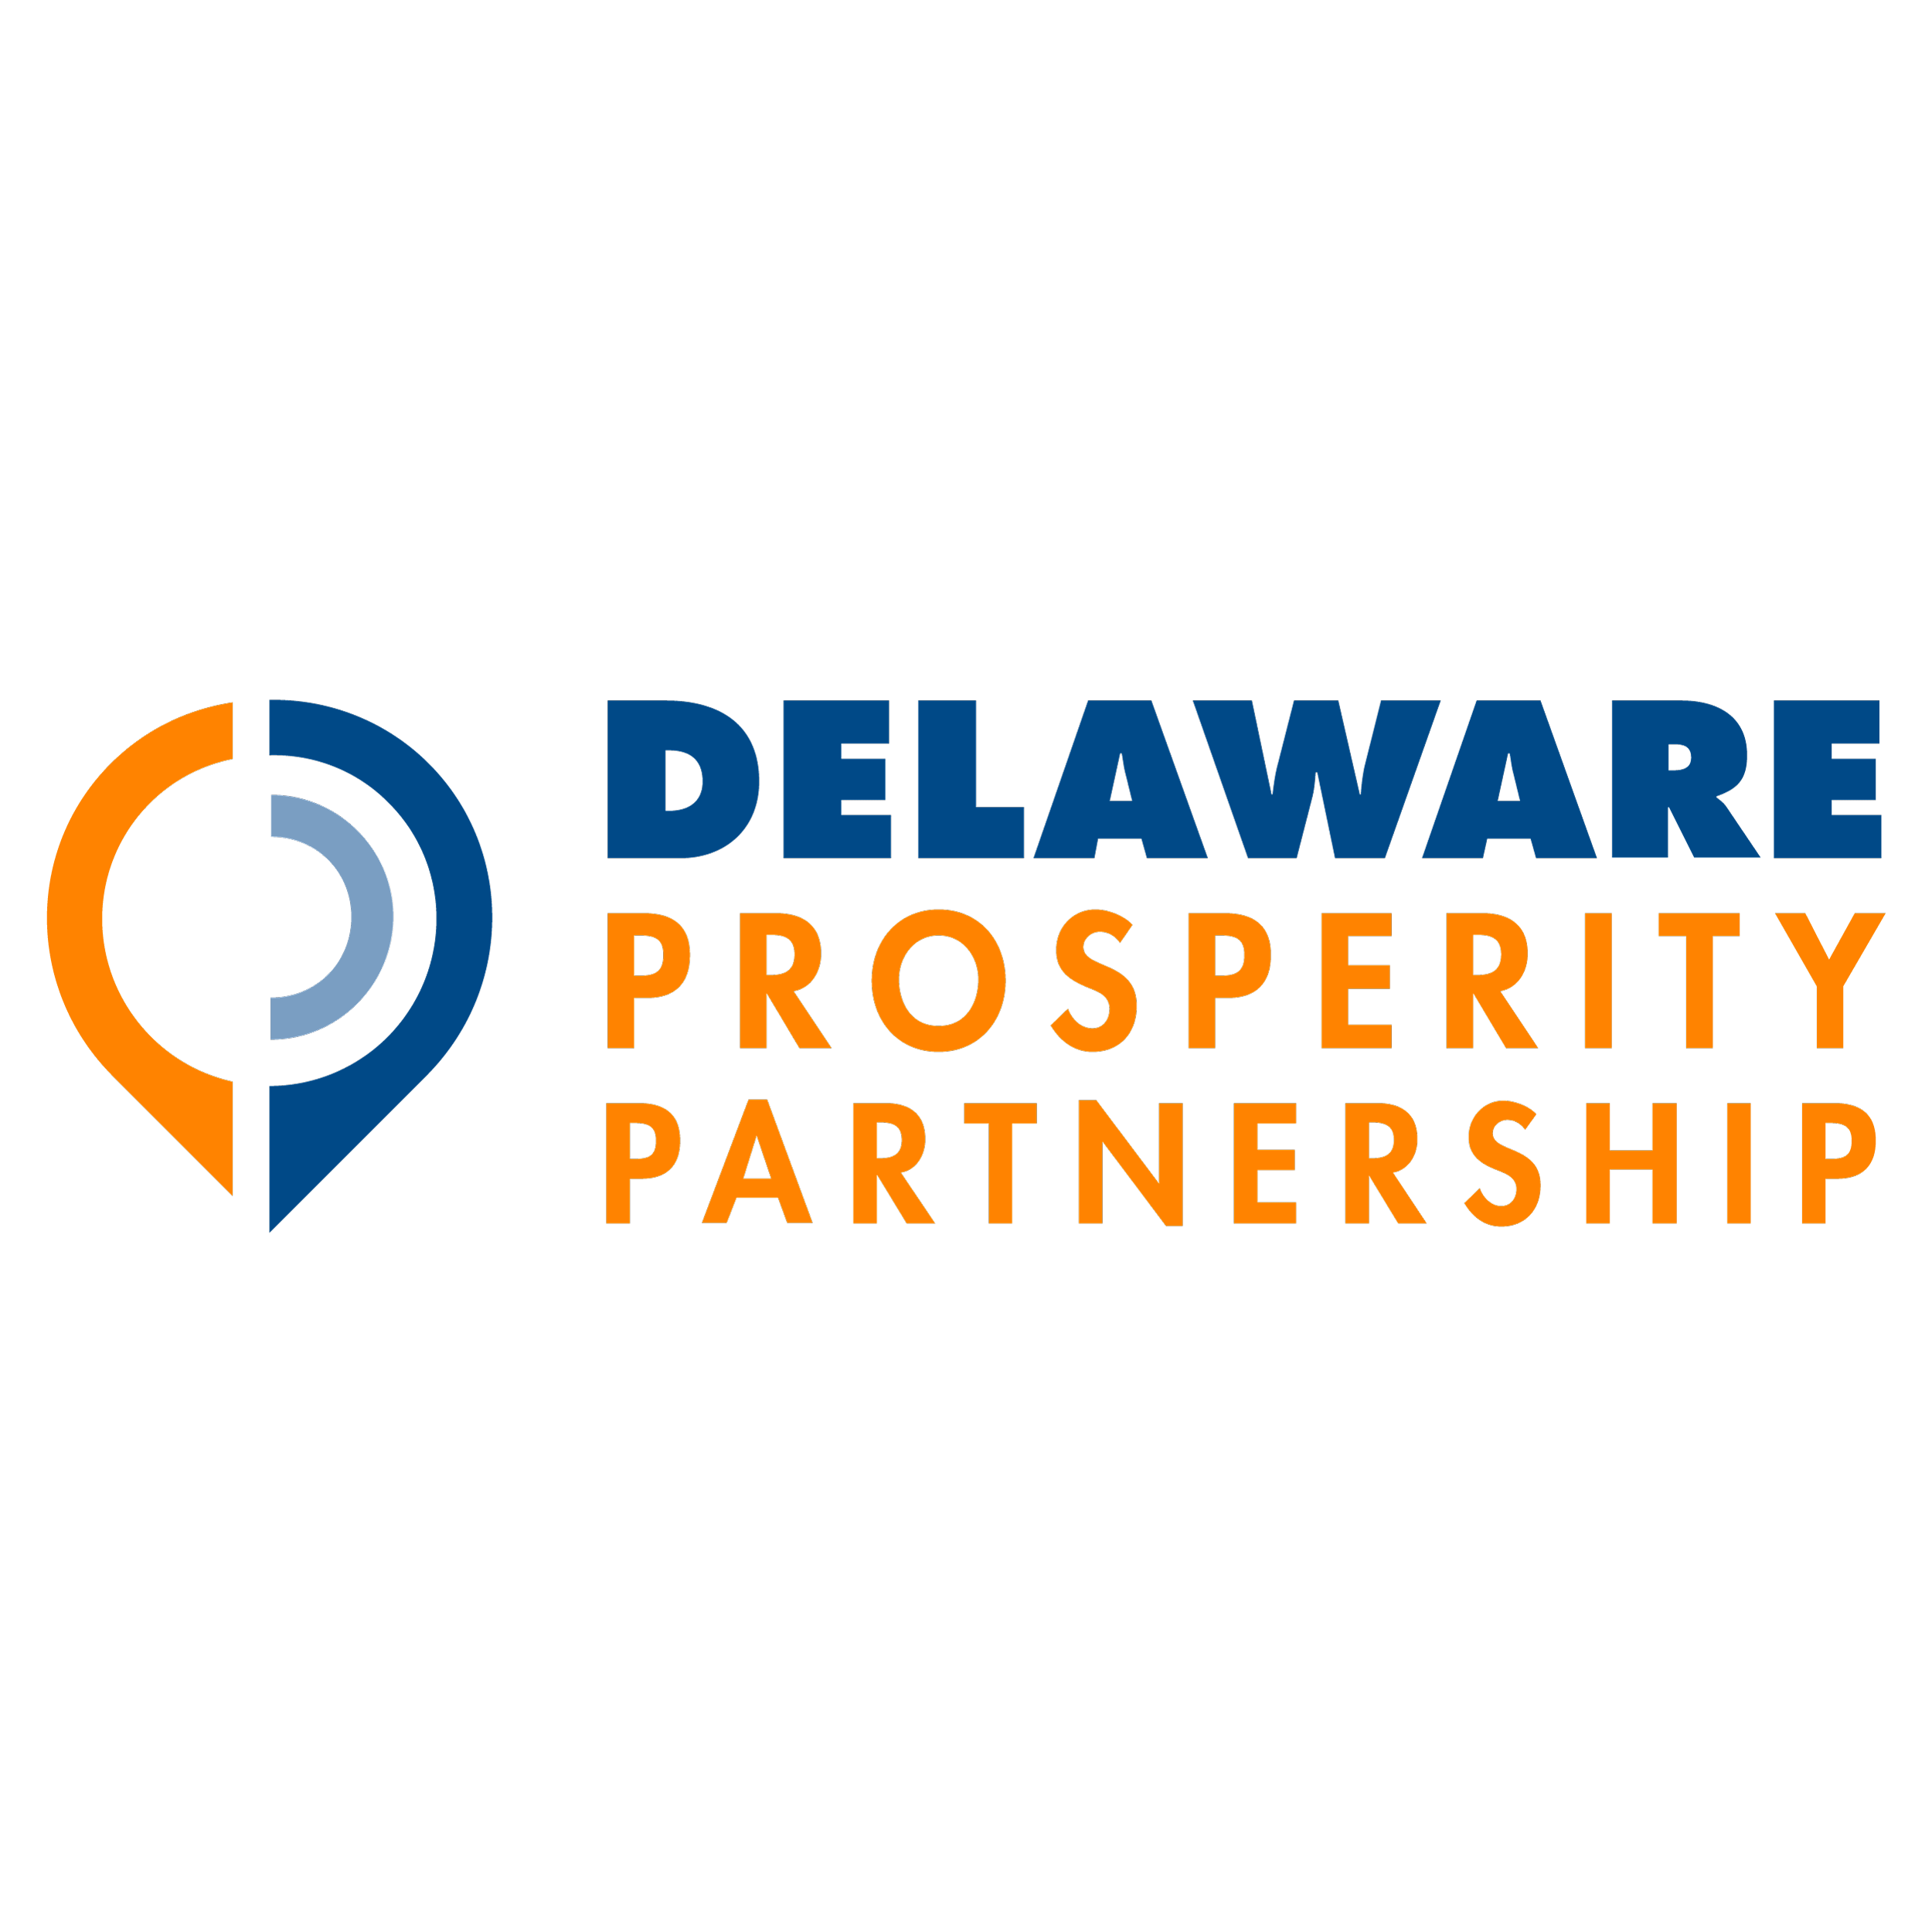 Delaware Logo - Business in Delaware. Delaware Prosperity Partnership